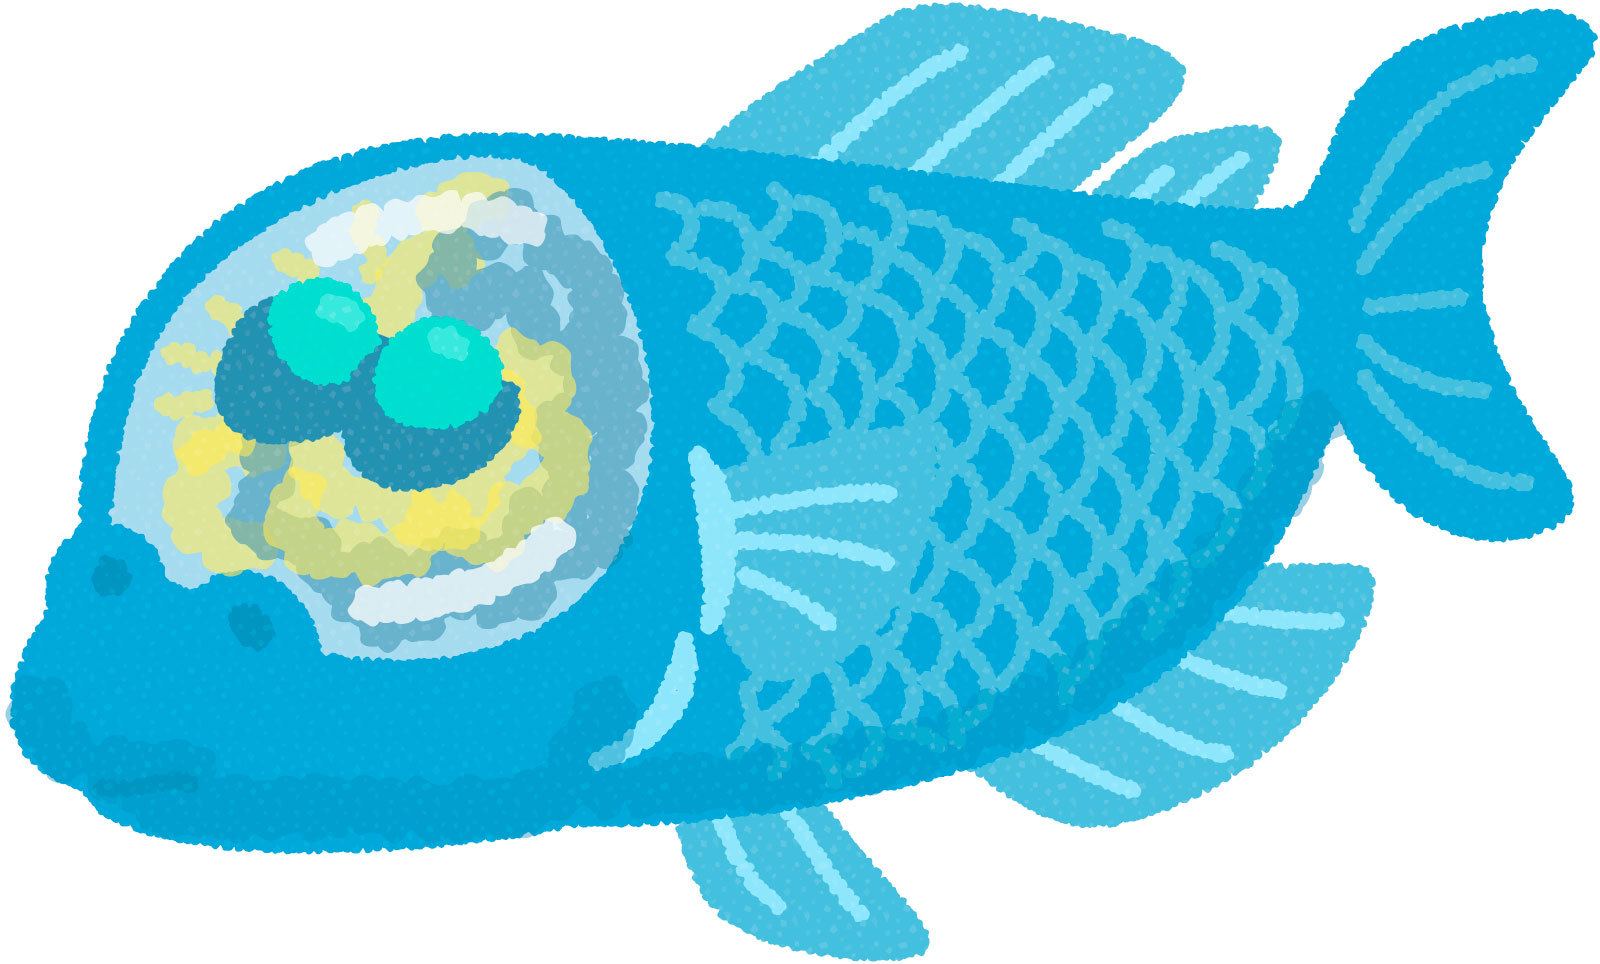 頭が透明な深海魚 デメニギス とは その不思議な魚の生態や正体に迫る 暮らし の